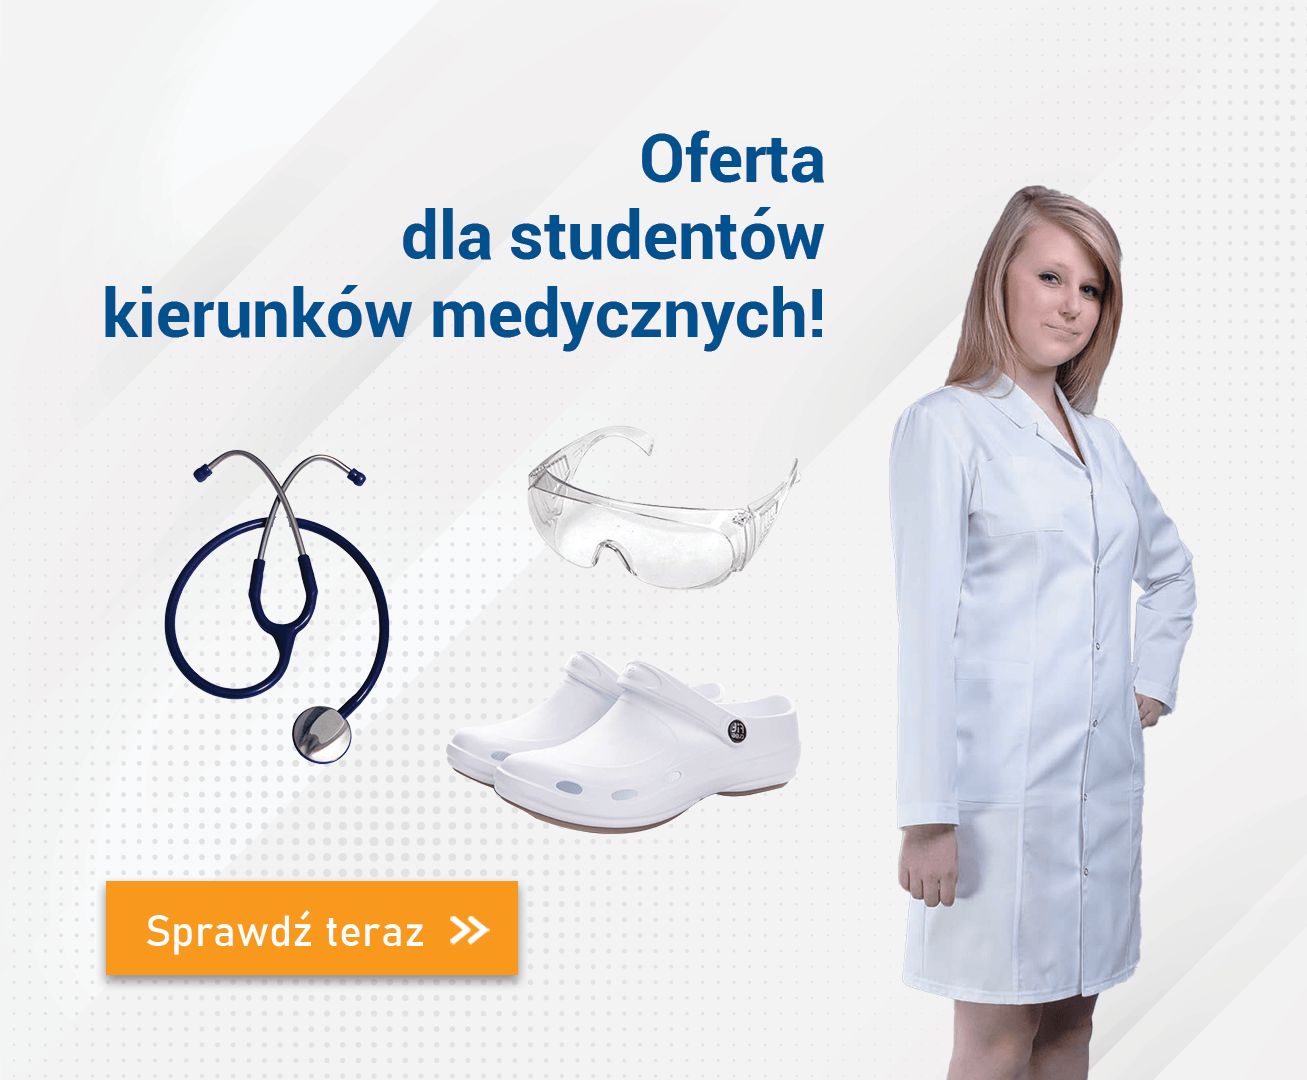 Specjalna oferta dla studentów szkół medycznych!